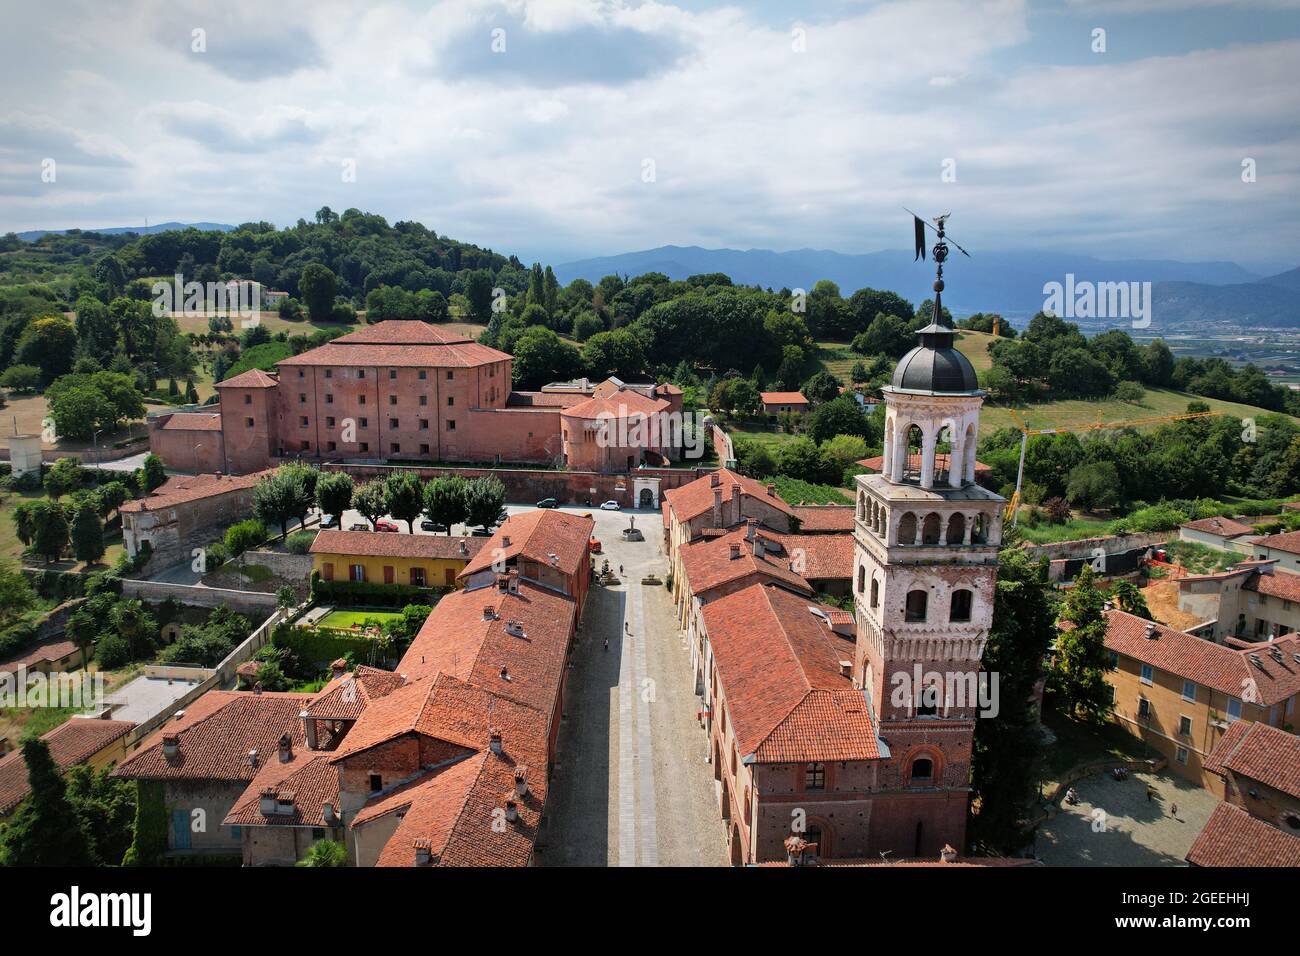 Vista aérea de la ciudad de Saluzzo, uno de los pueblos medievales mejor conservados de Piamonte, Italia Foto de stock